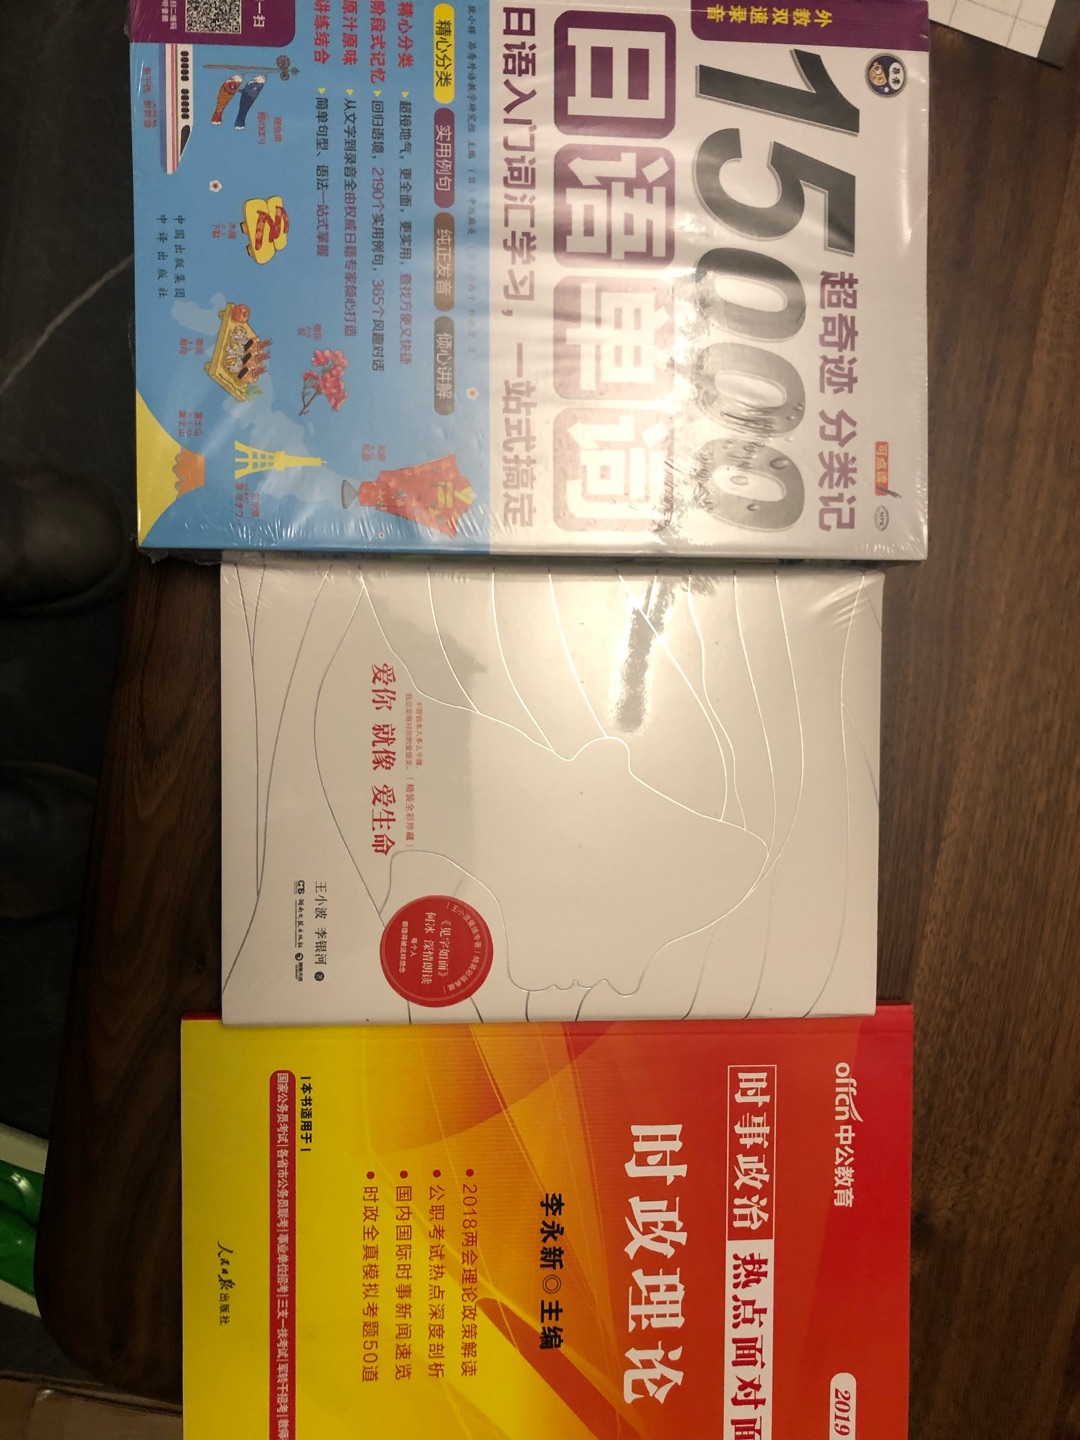 给我爸买的，买了很多书来没来得及拆开看。送货真是太快了，网购也太方便了吧。中国现代社会的物流也太厉害了吧。